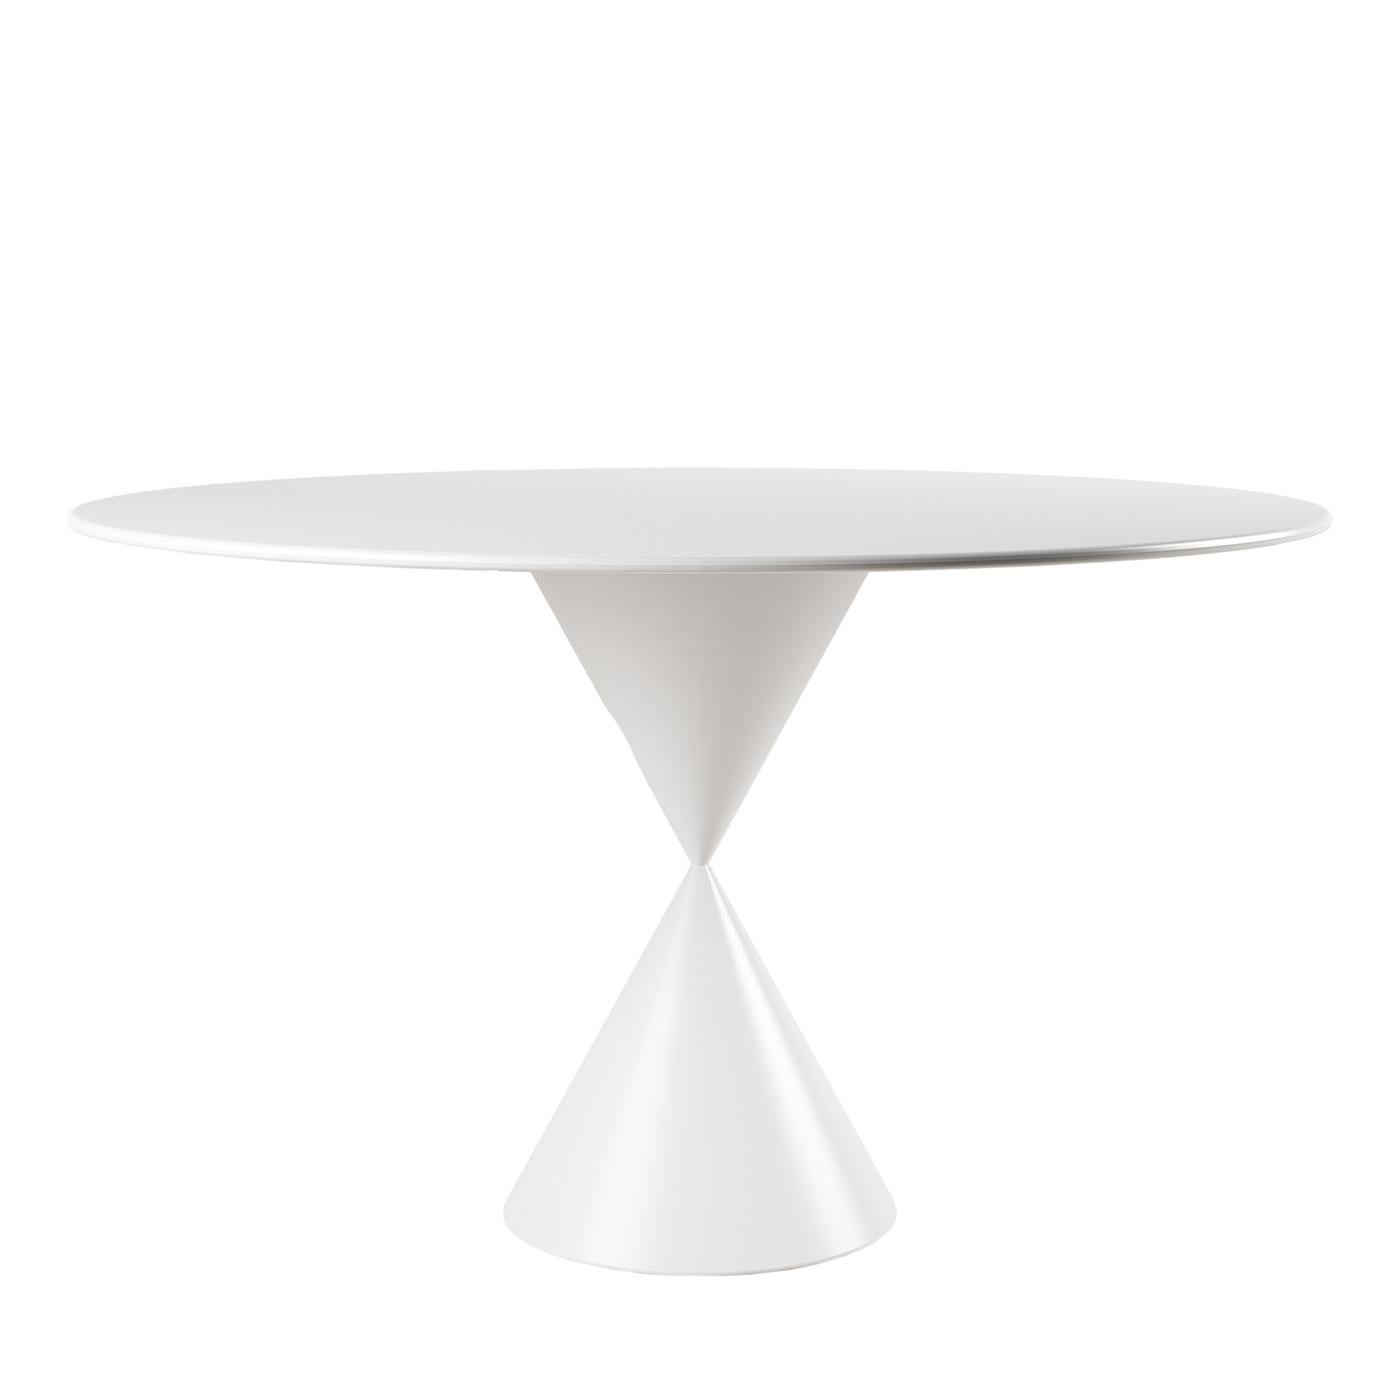 CON-TATTO White Dining Table by Walter De Silva For Sale